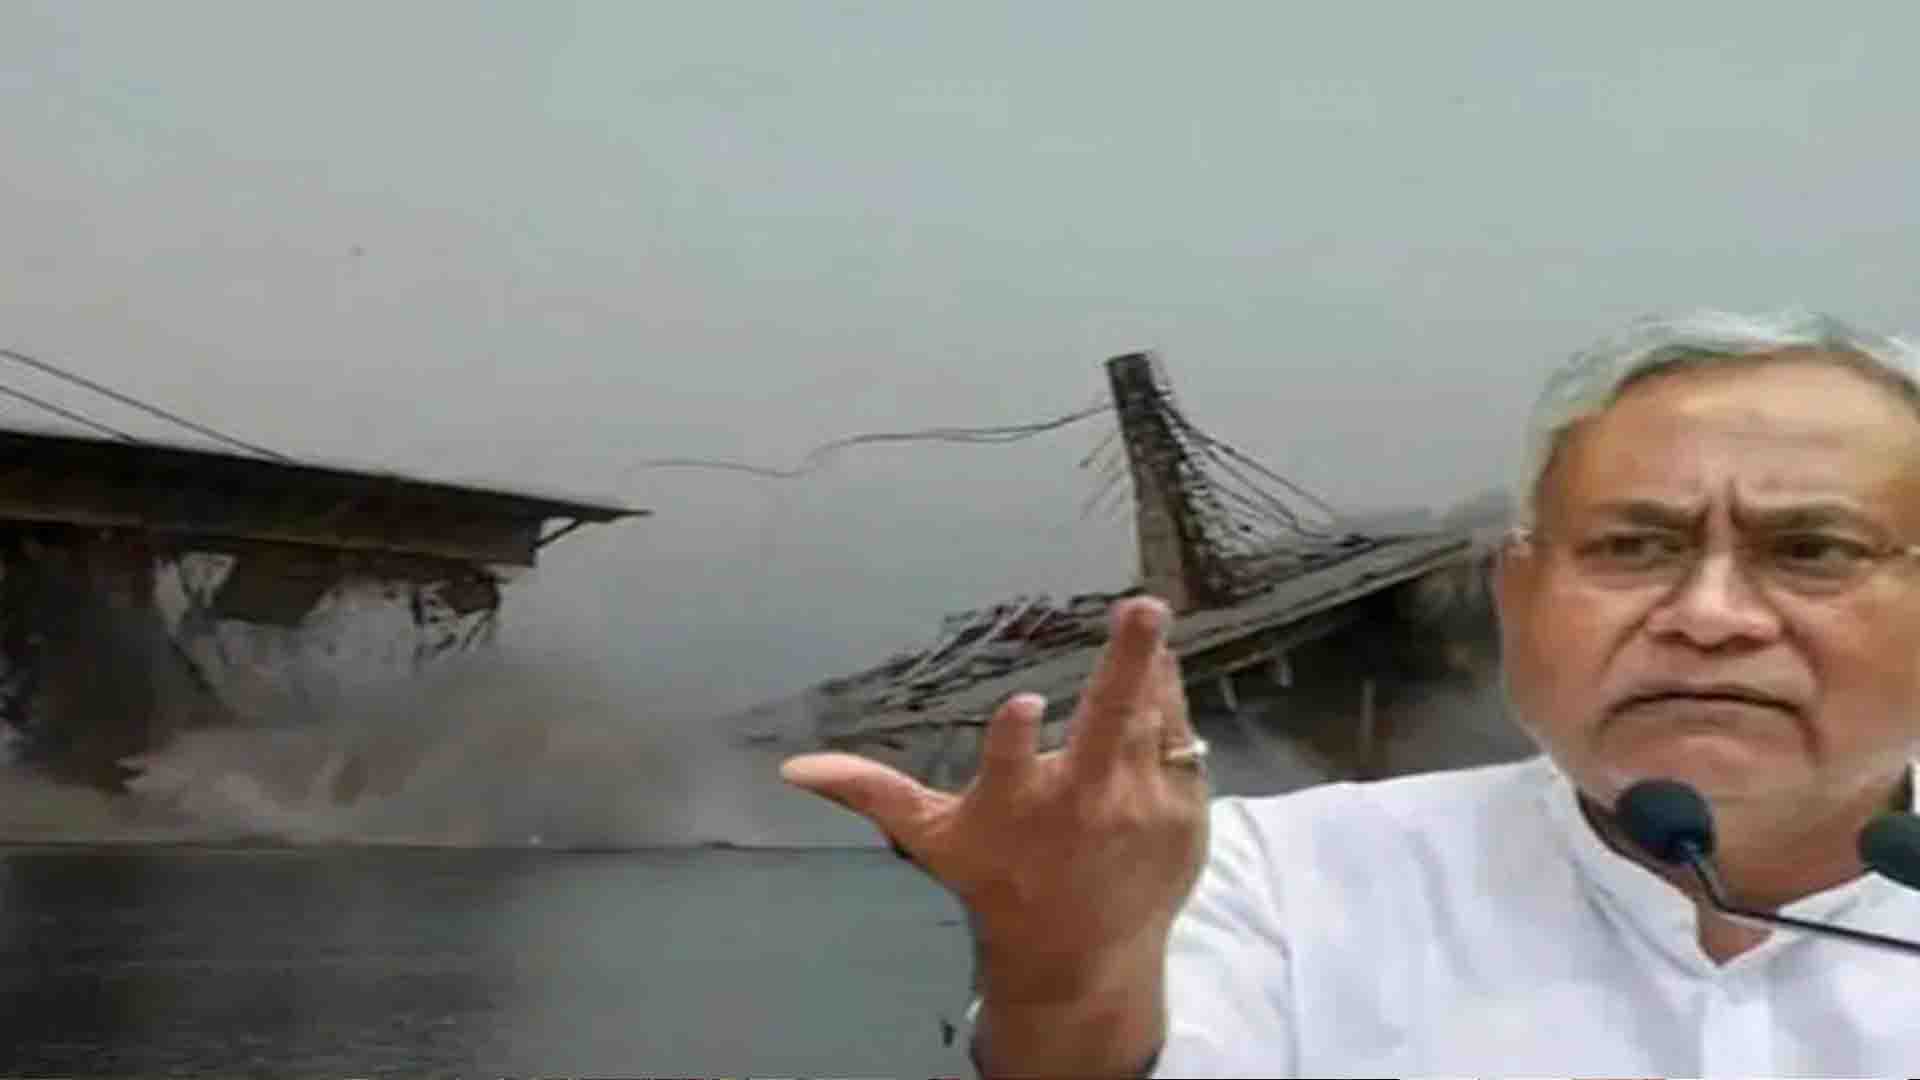 Bhagalpur Bridge Collapse: गंगा नदी पर बन रहा फौर लेन पुल भर-भरा कर गिरा, सीएम नीतीश कुमार ने दिए जांच के आदेश